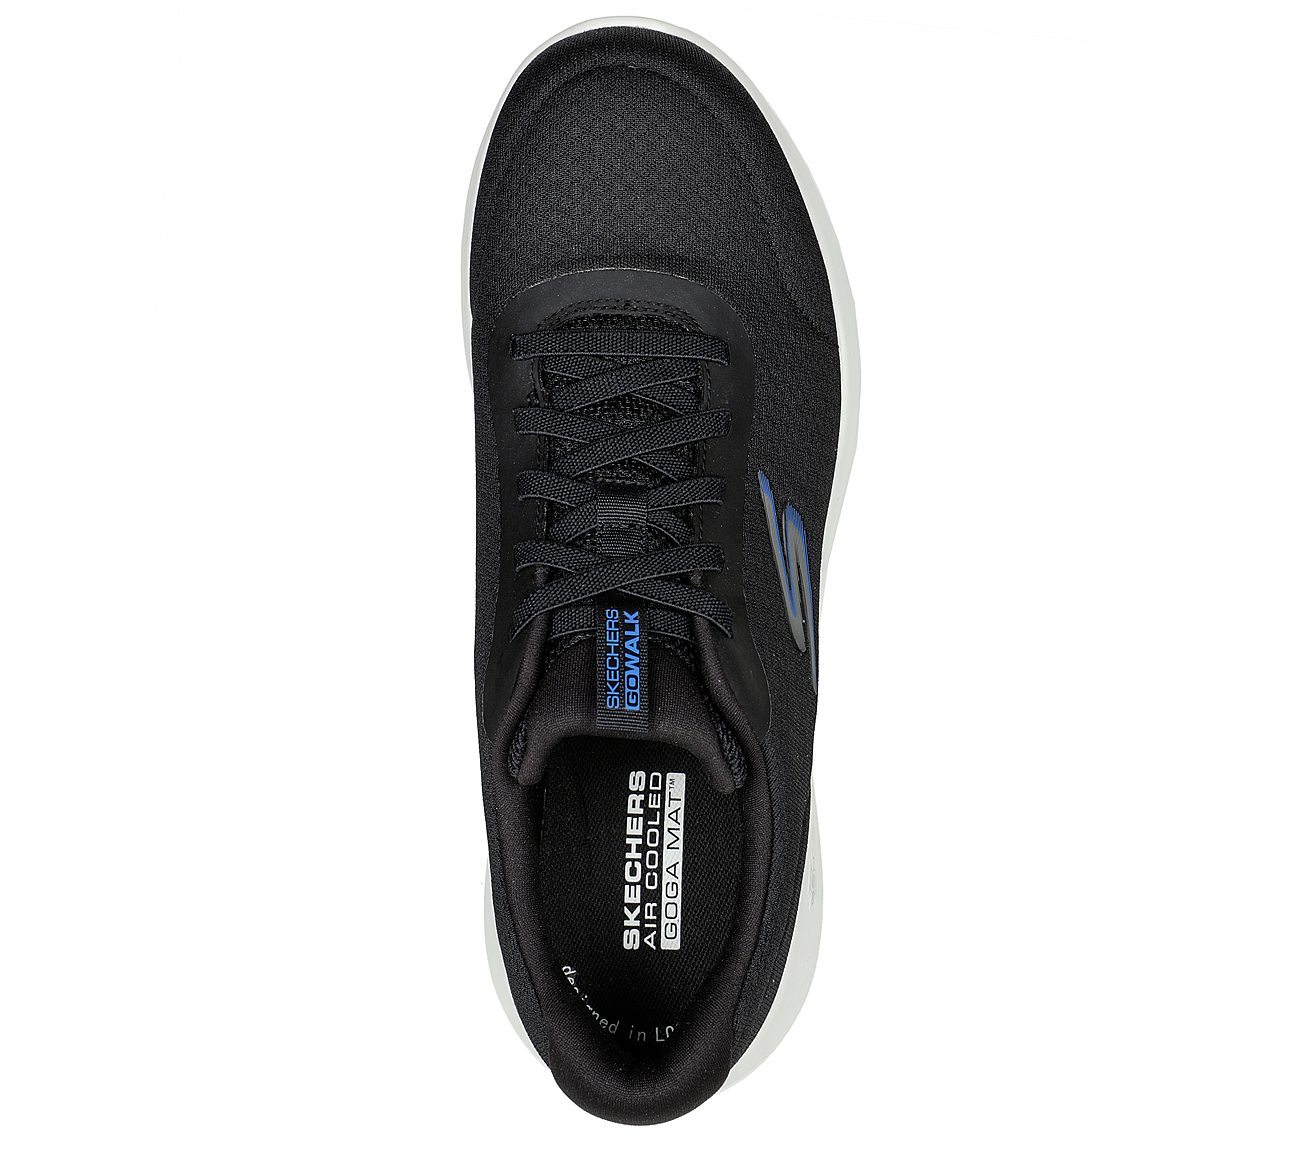 Skechers Black/Blue Go Walk Max Midshore Lace Up Shoes For Men - Style ...